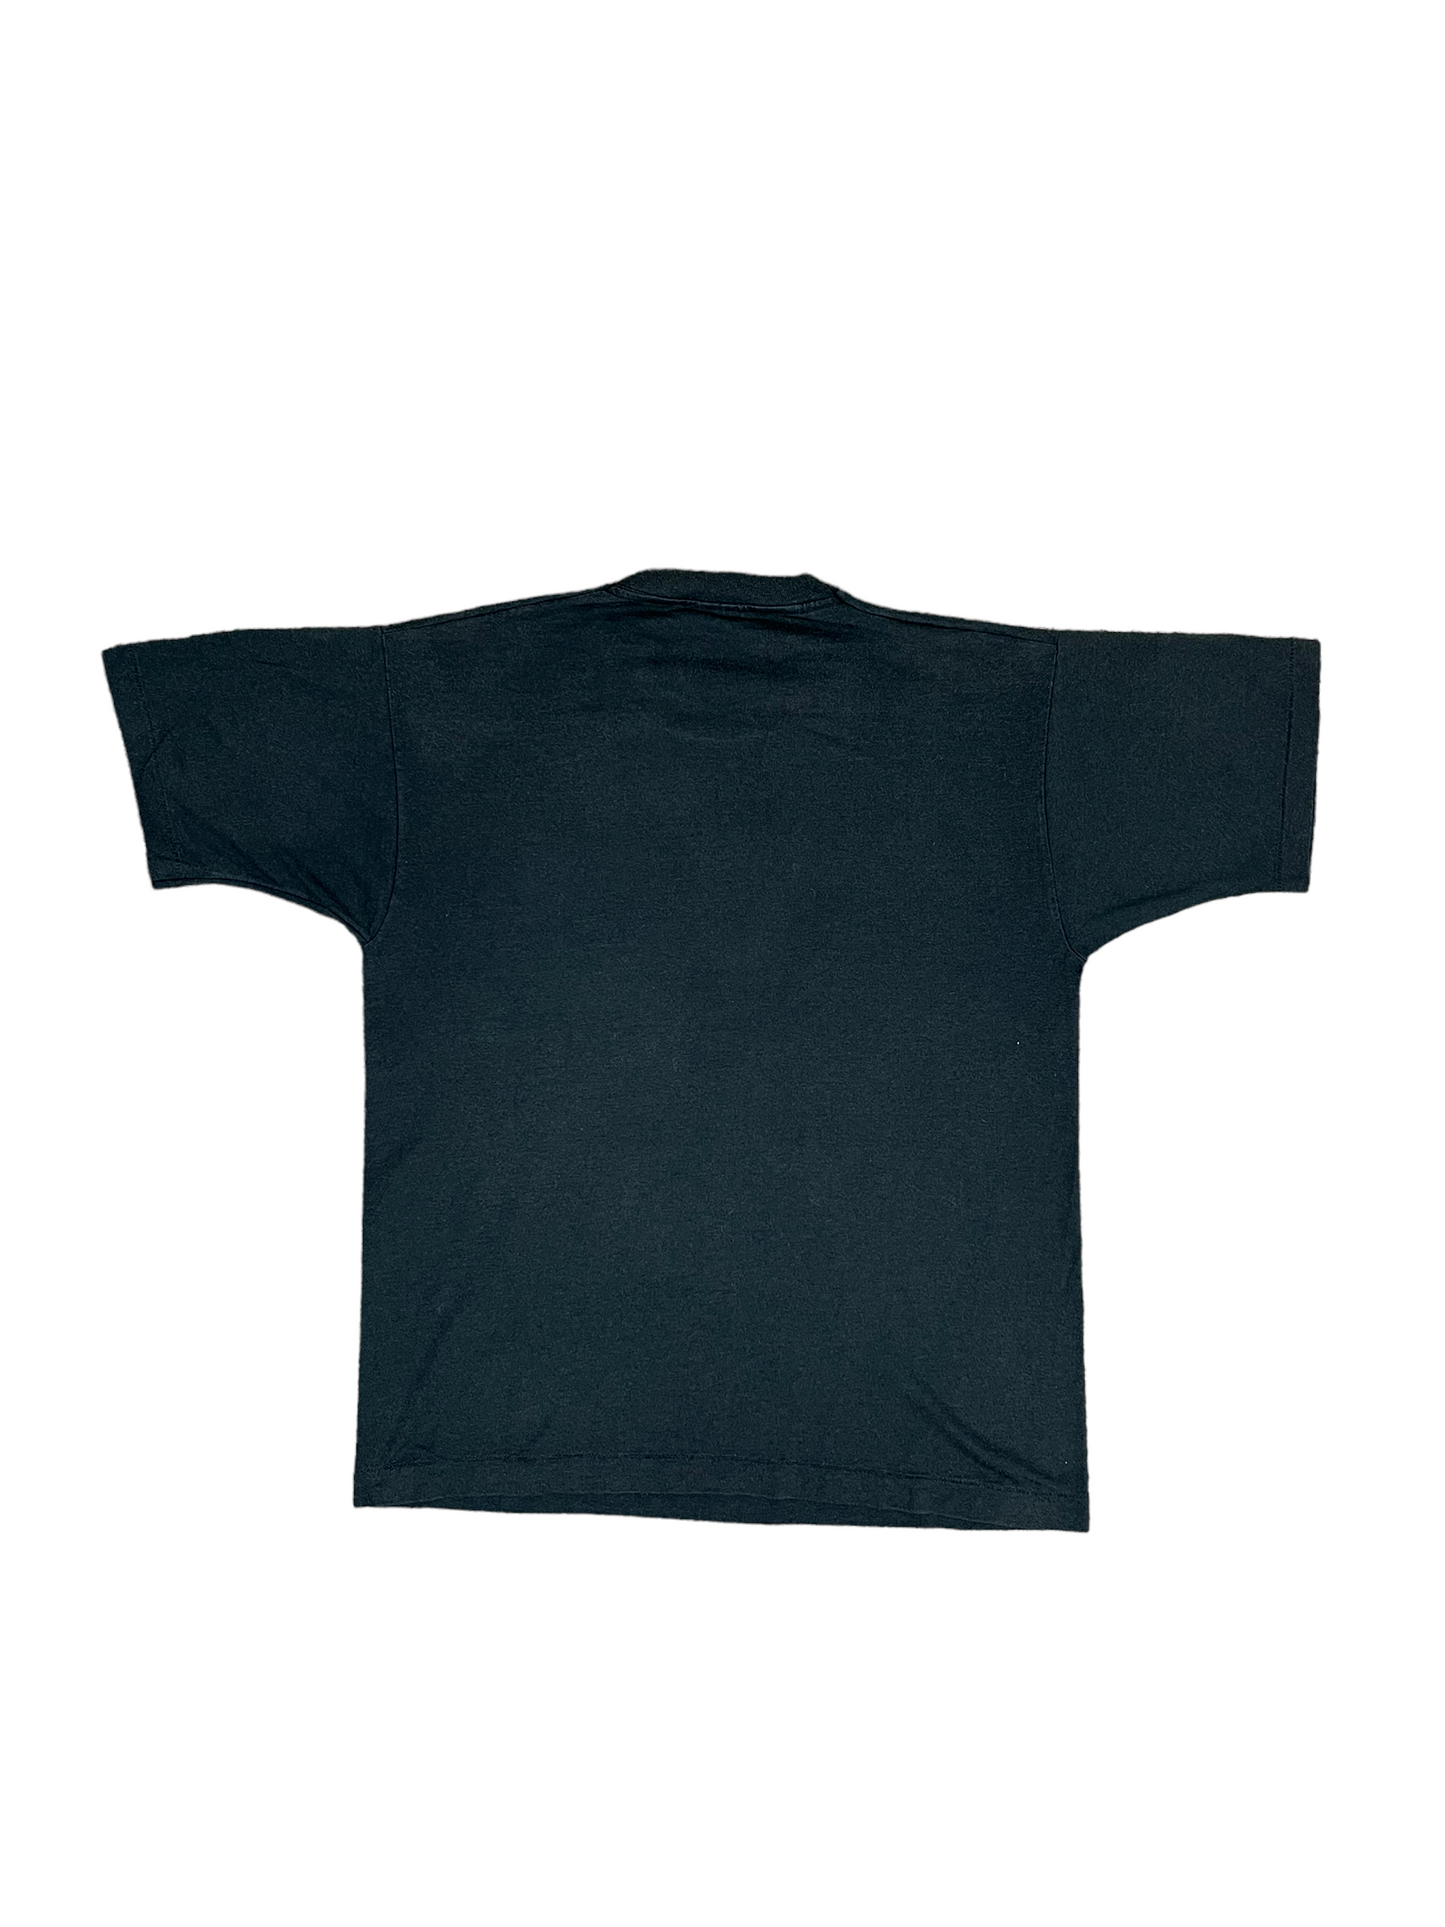 Vintage 90’s Club Cheeks T Shirt - Large